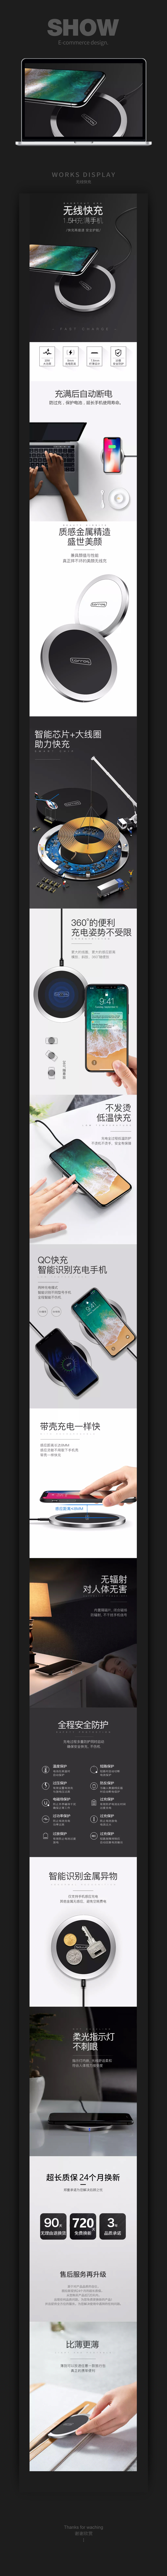 淘宝美工Mi蜜iphonex苹果8无线充电器iphone8plus手机专用无线快充作品